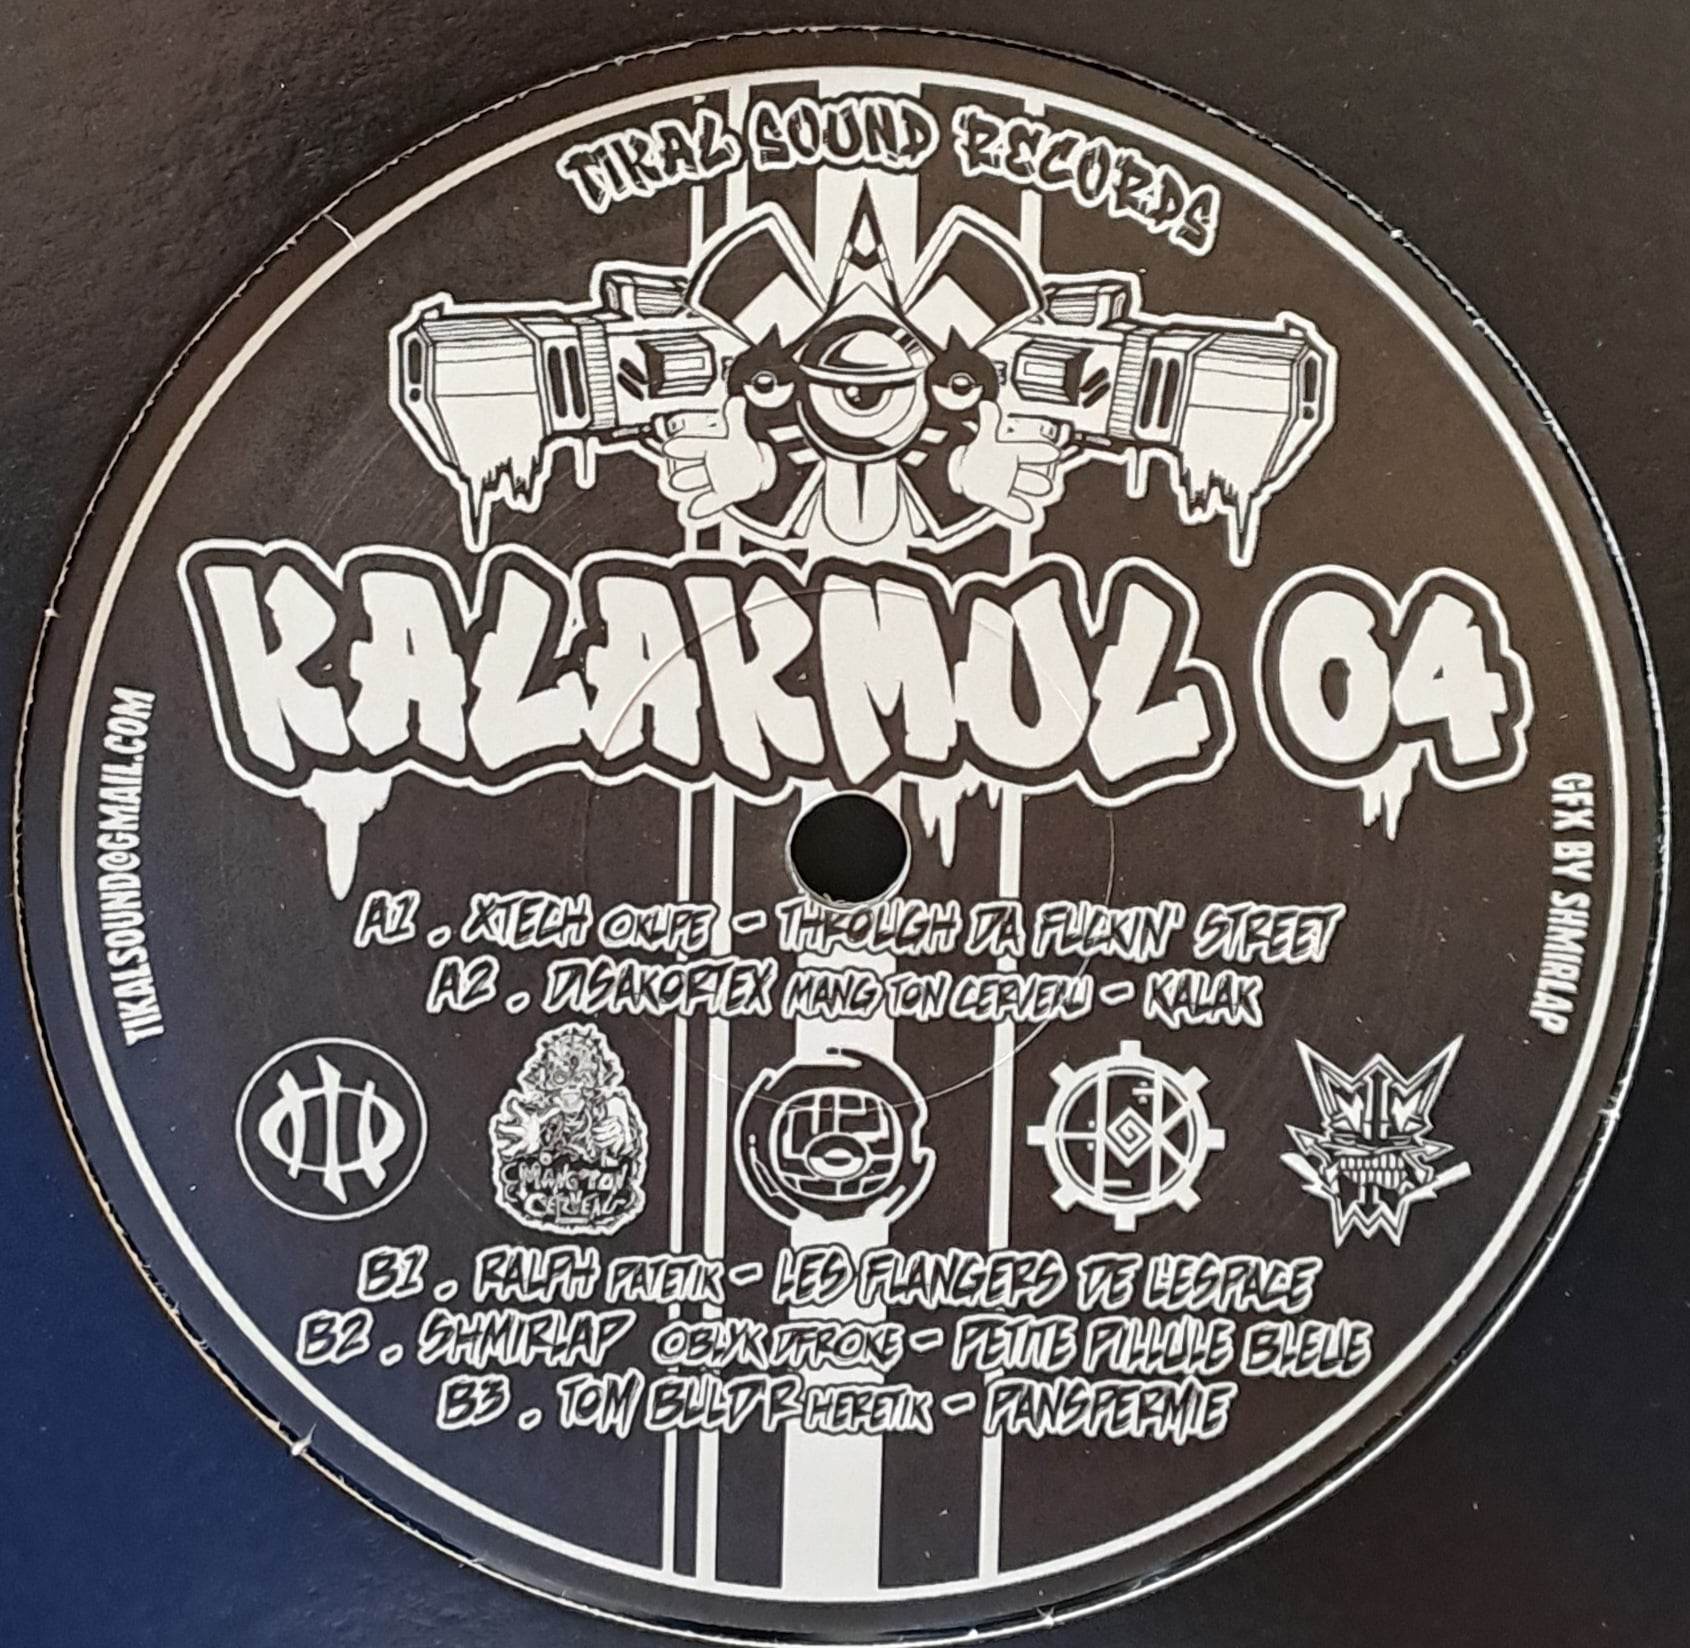 Kalakmul 04 (toute dernière copie en stock) - vinyle freetekno